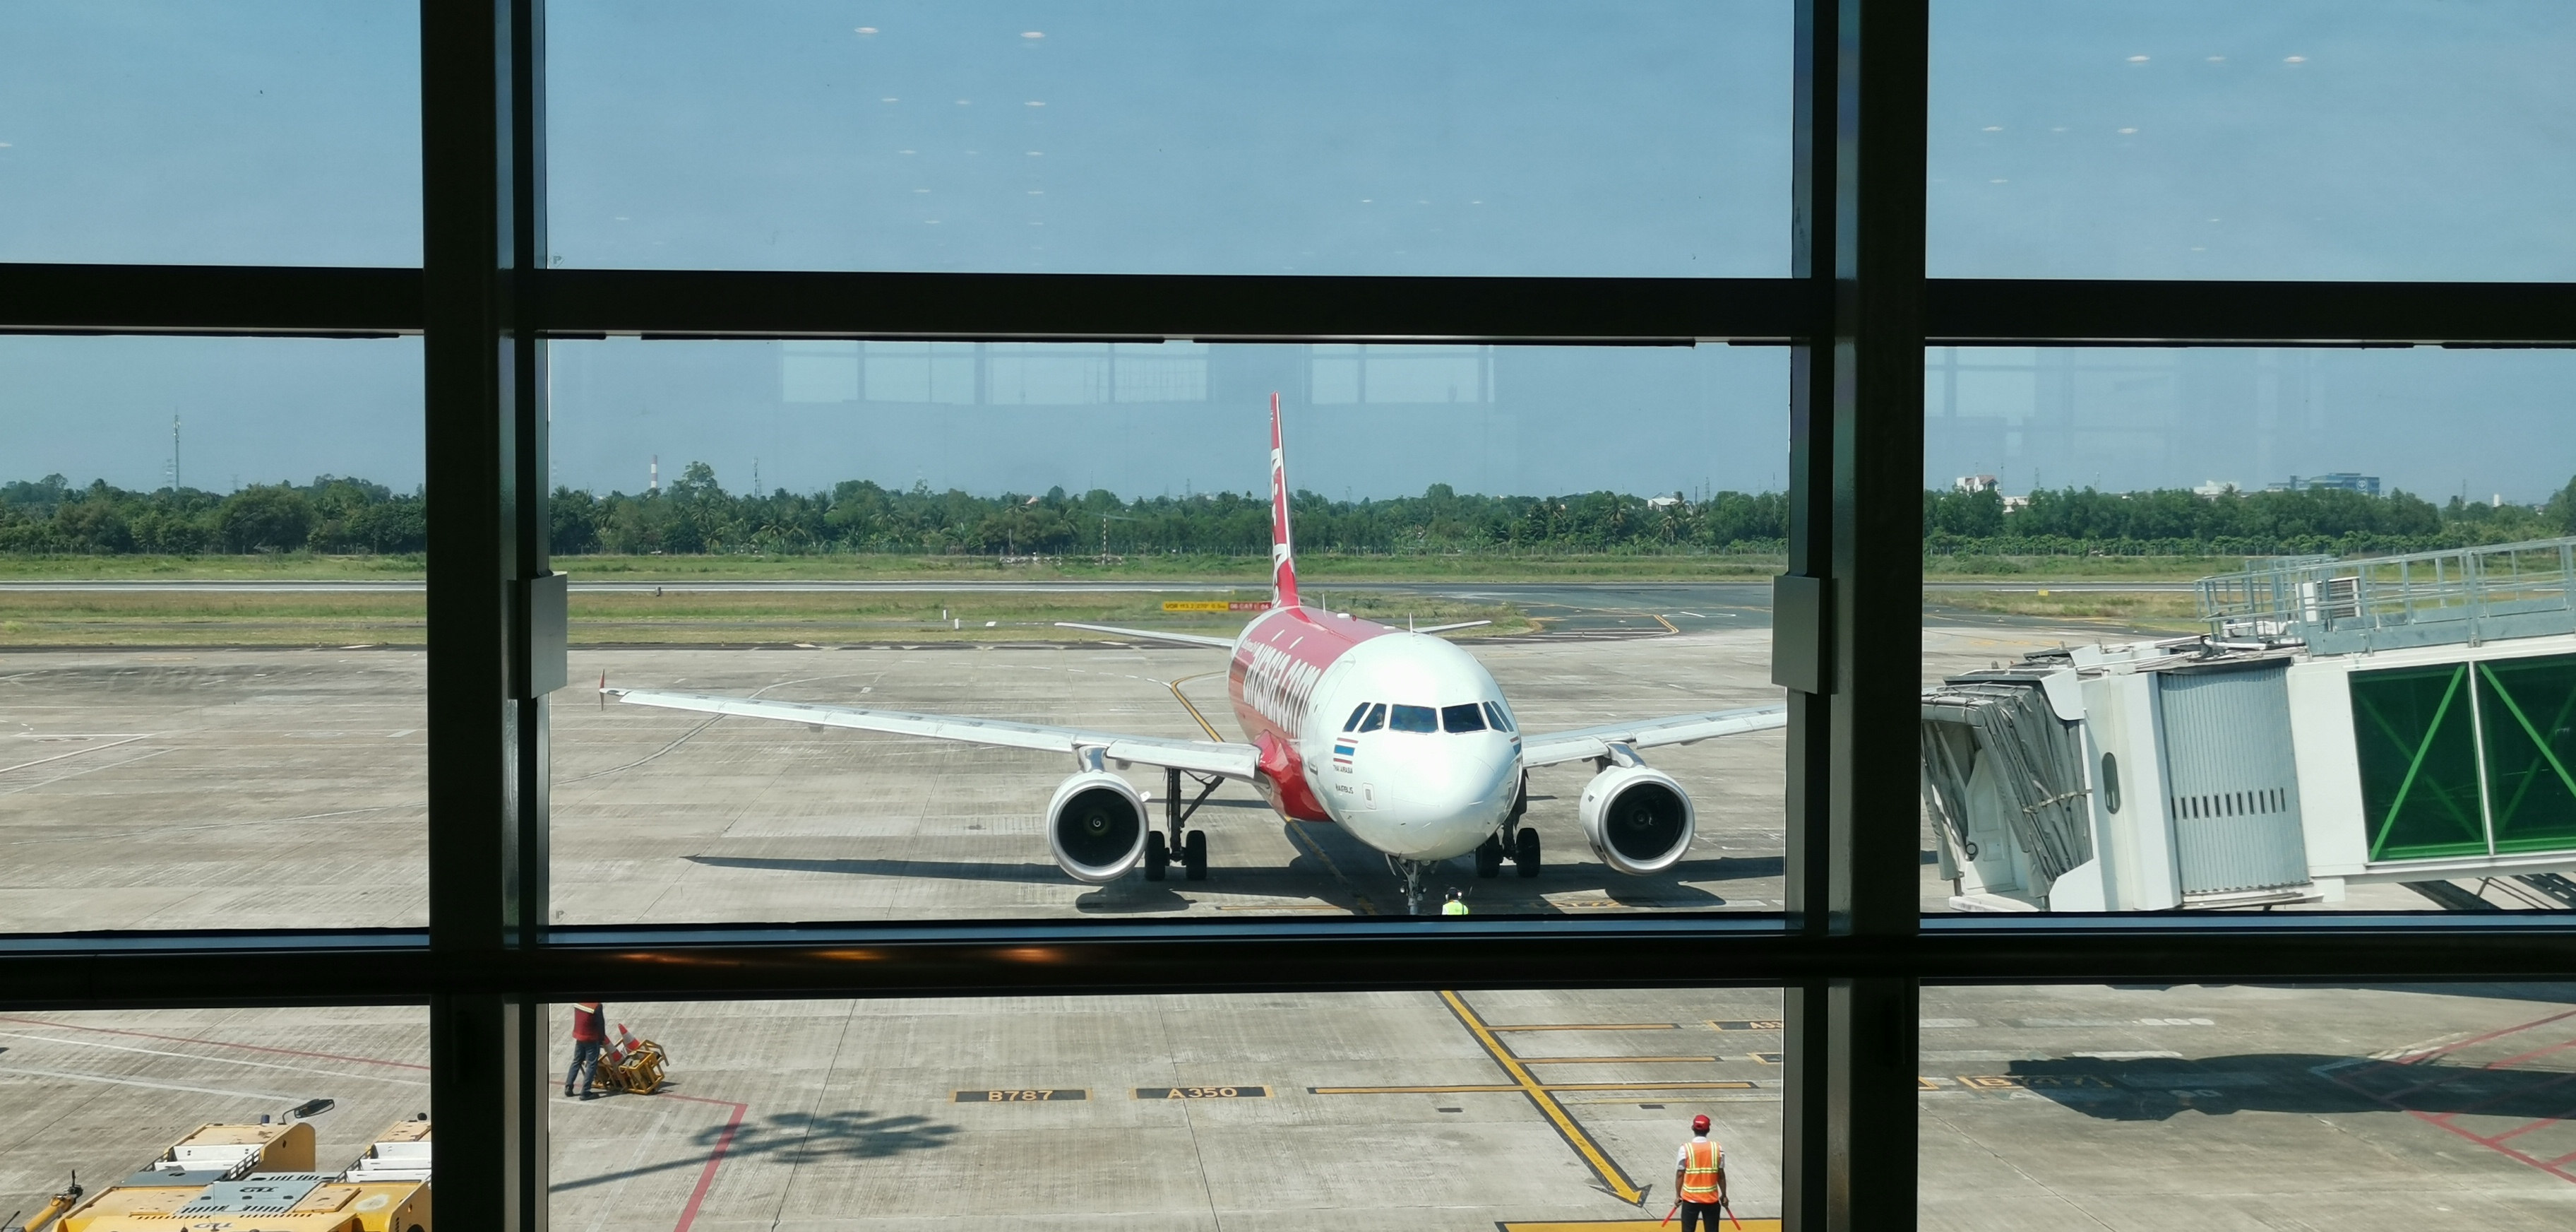 Bay hãng giá rẻ Thai AirAsia từ Cần Thơ đi Bangkok trên Airbus A320 có gì hay?